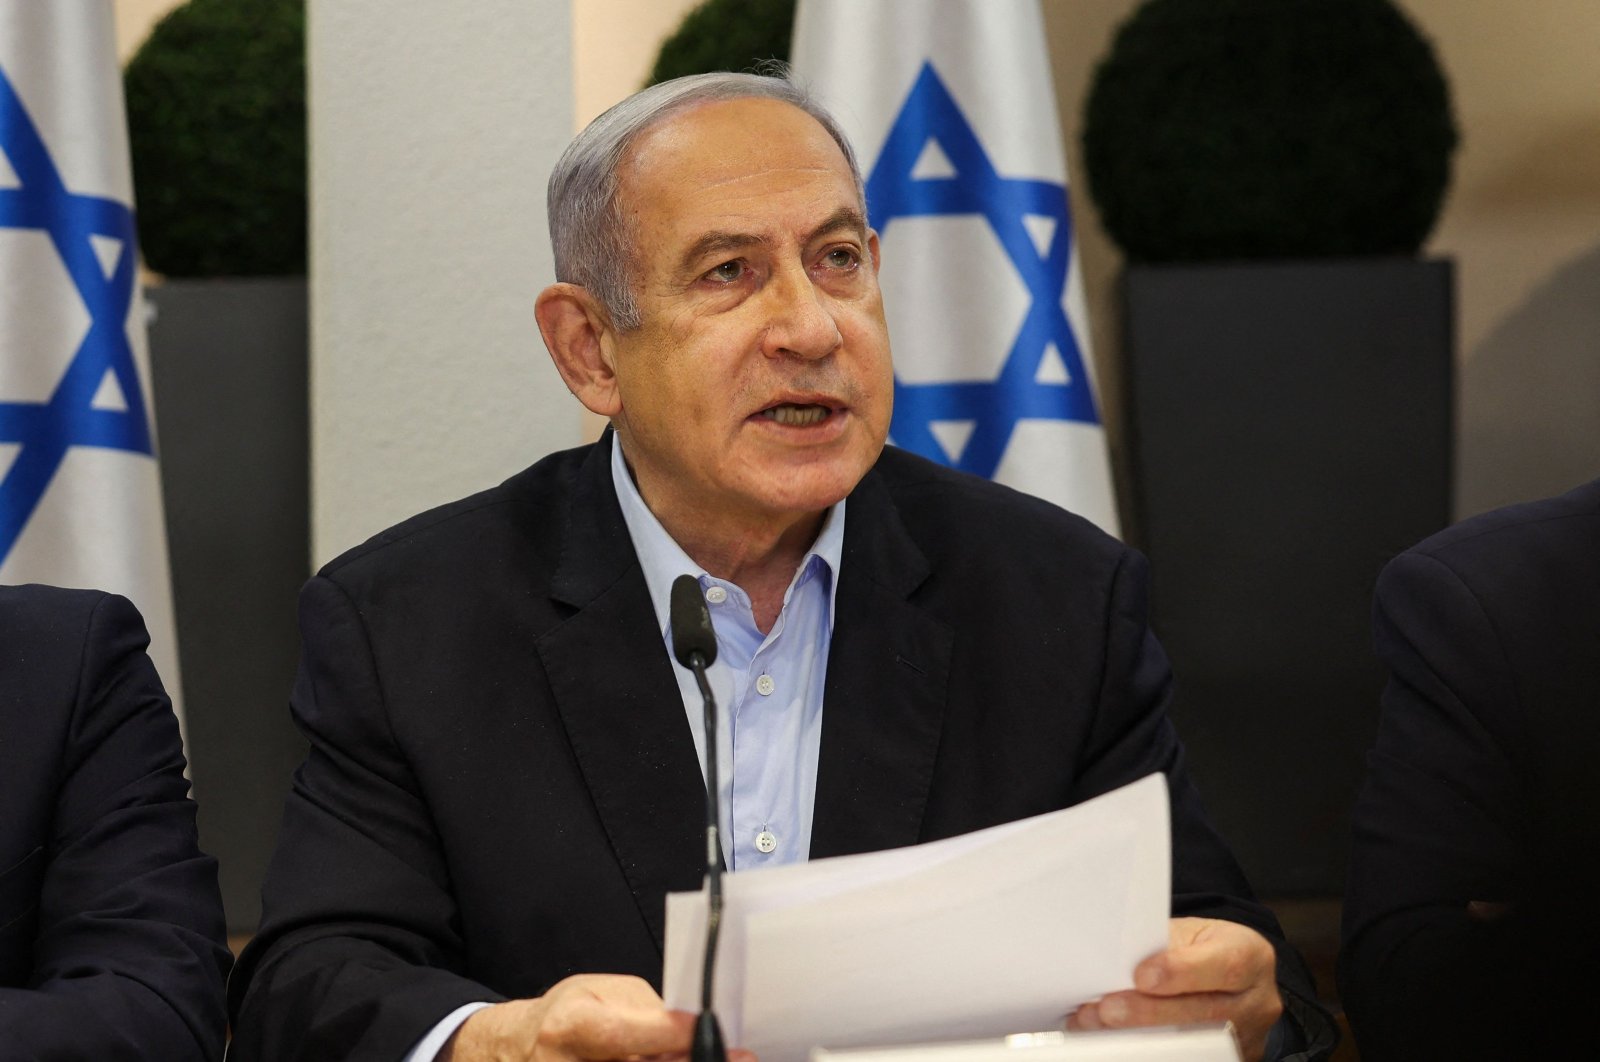 Netanyahu says against Palestinian state in any postwar scenario